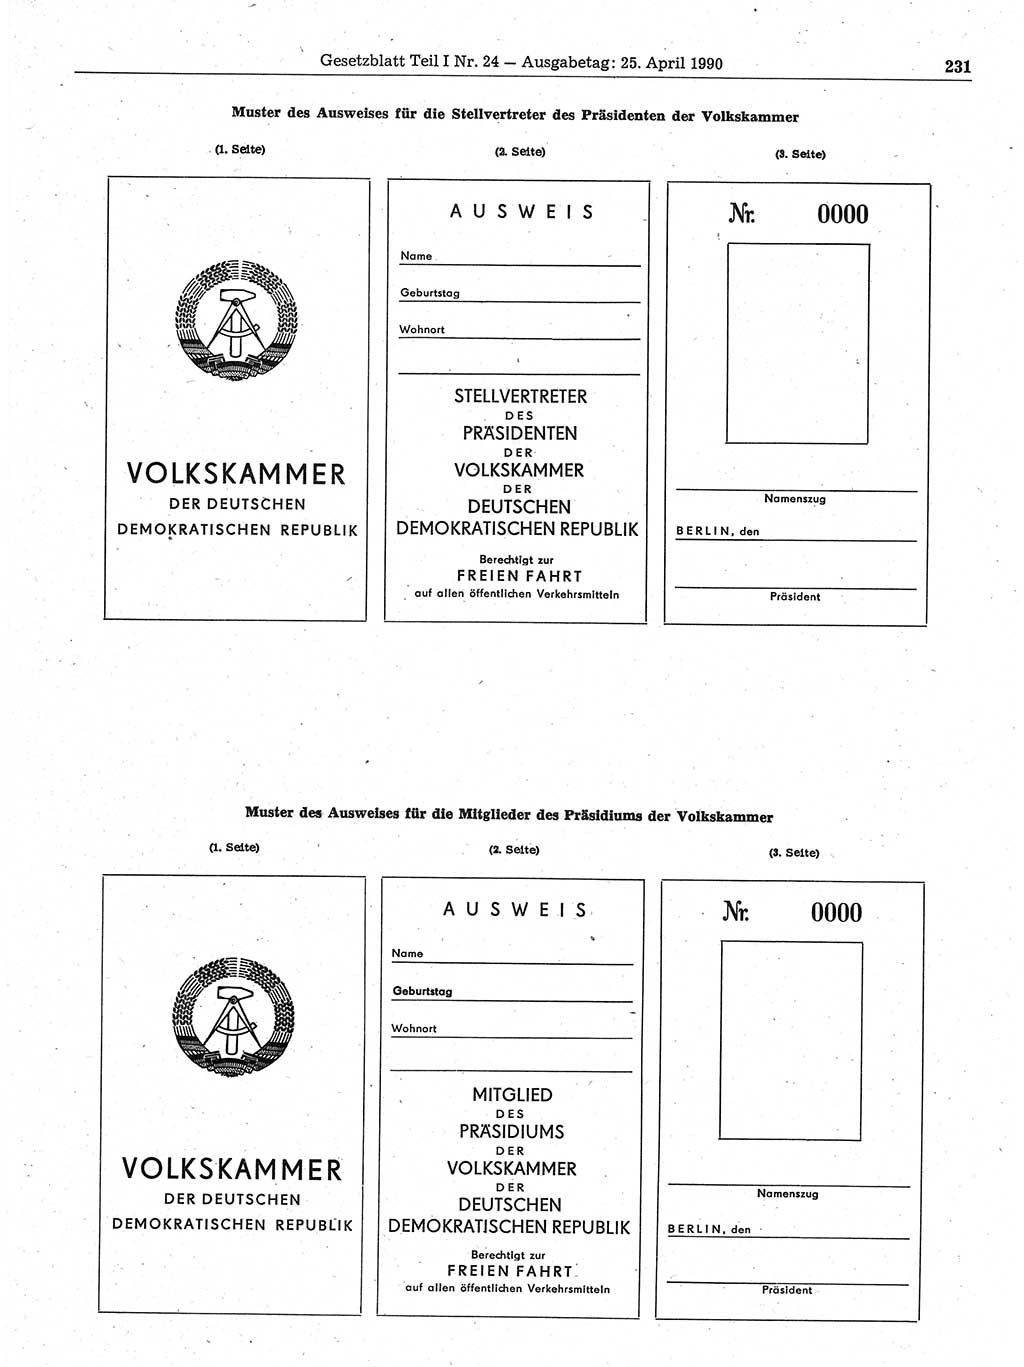 Gesetzblatt (GBl.) der Deutschen Demokratischen Republik (DDR) Teil Ⅰ 1990, Seite 231 (GBl. DDR Ⅰ 1990, S. 231)